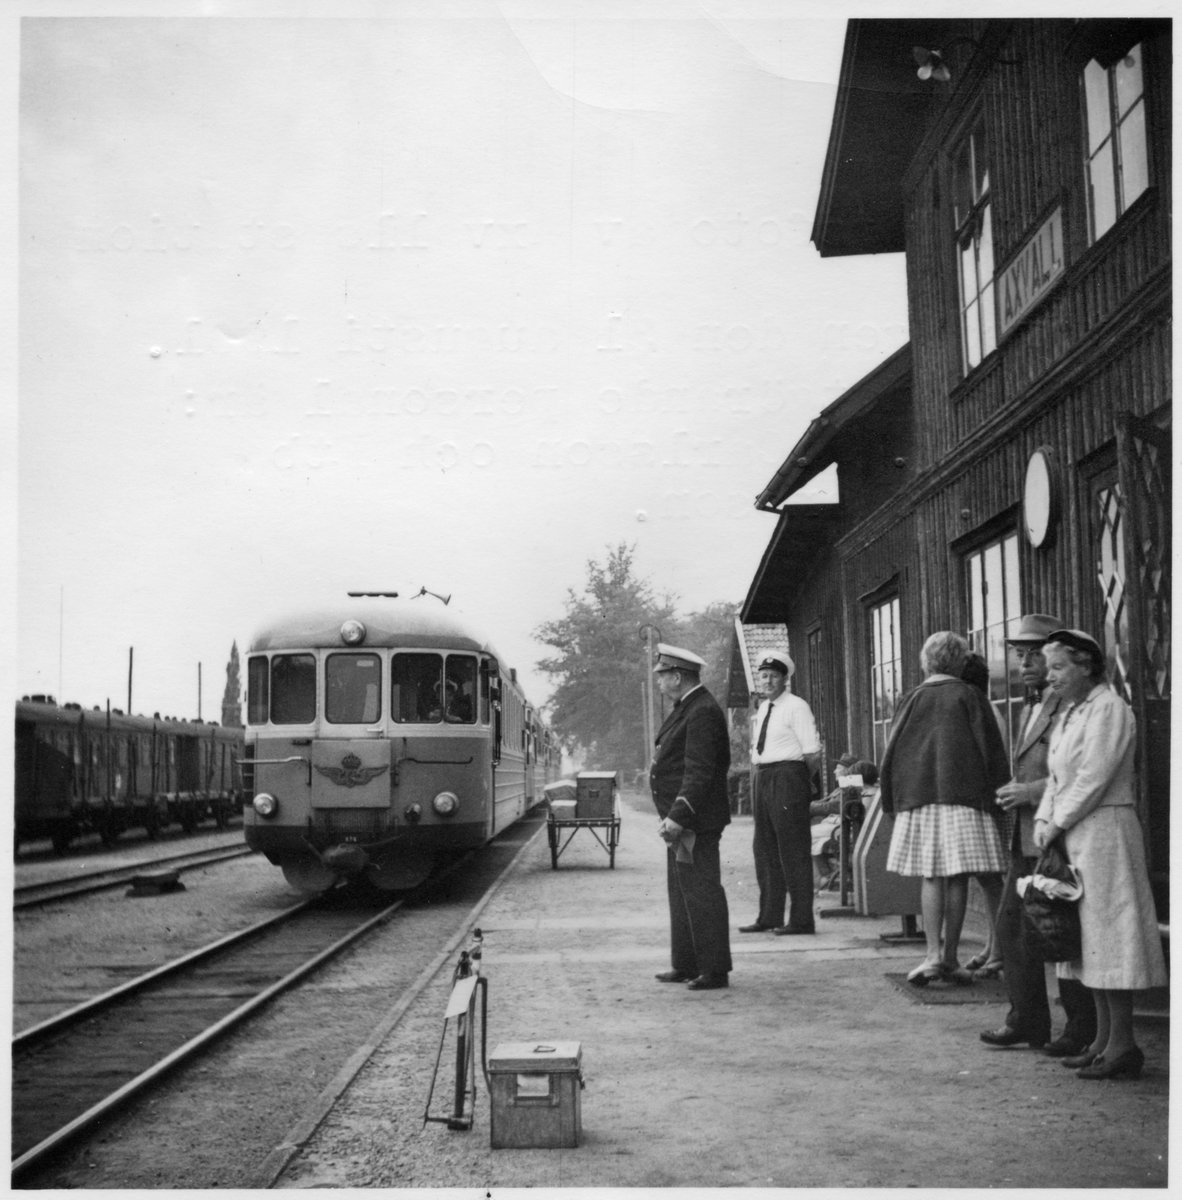 Sistadagsfoto av Axvalls station torsdagen den 31 augusti 1961 .
Tjänstgörande personal är Stationsmästare  R. Carlsson och Ftb. S. Johansson. Motorvagnen är SJ YCo5p 876, tillverkad av Hilding Carlsson, slopad 1970.